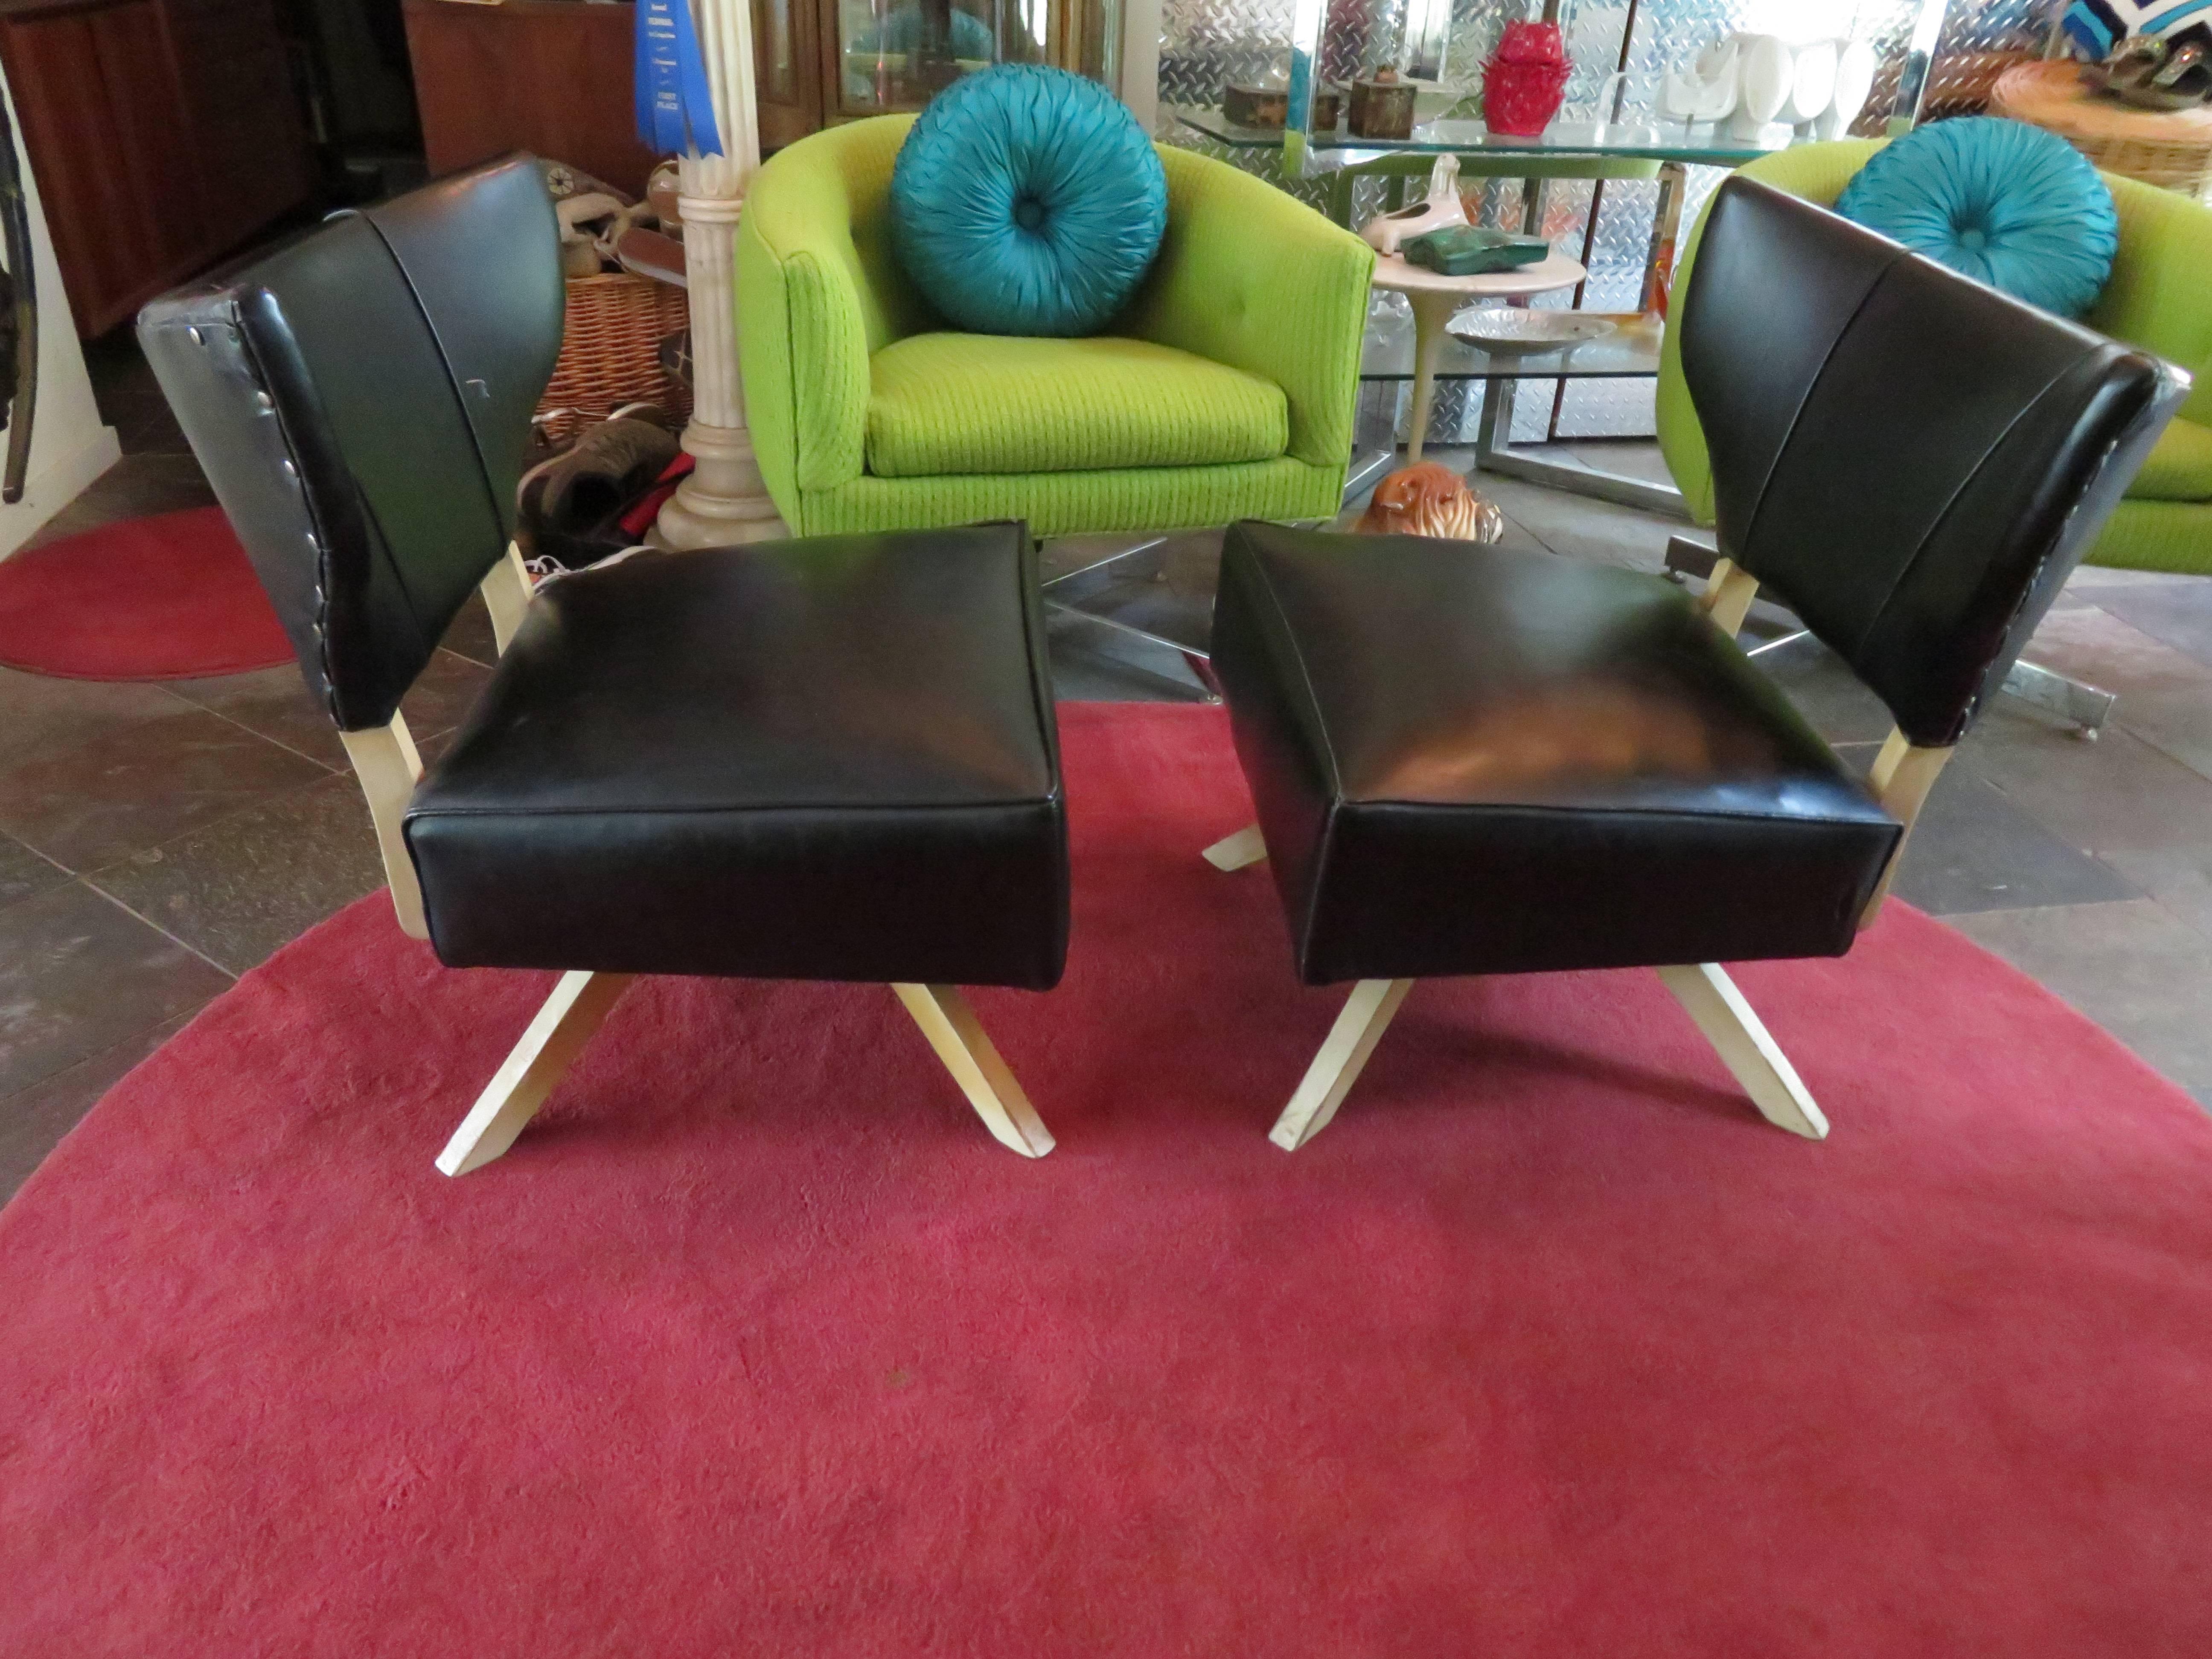 Paire de fauteuils pivotants super cool de Kroehler. Les chaises sont dans un bel état vintage et conservent leur faux cuir noir d'origine - un rembourrage est recommandé. Nous adorons les dossiers scandaleux de style aile de chauve-souris avec les